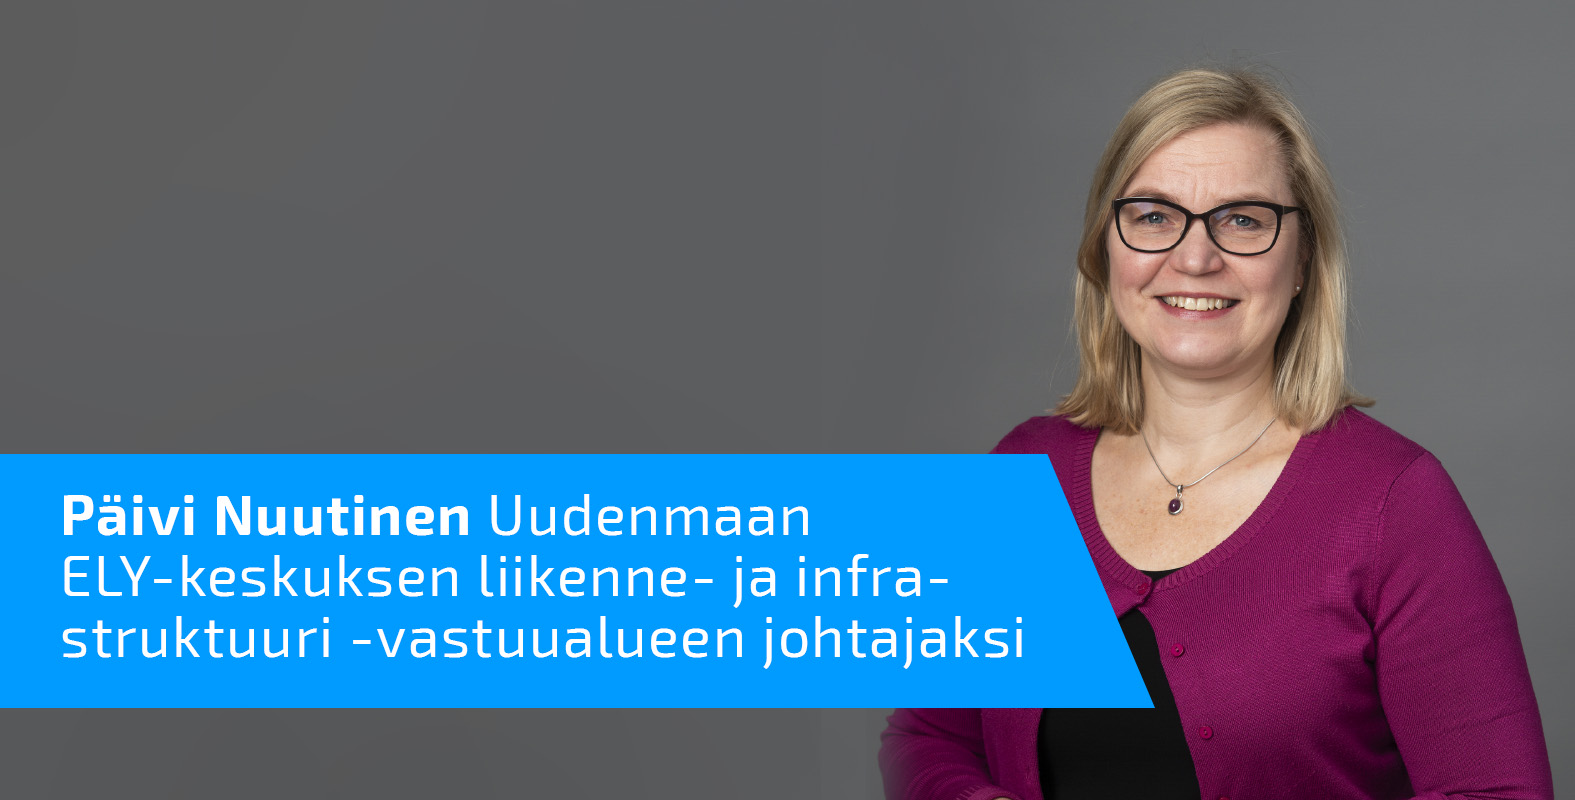 Päivi Nuutinen ja teksti Päivi Nuutinen Uudenmaan ELY-keskuksen L-vastuualueen johtajaksi.